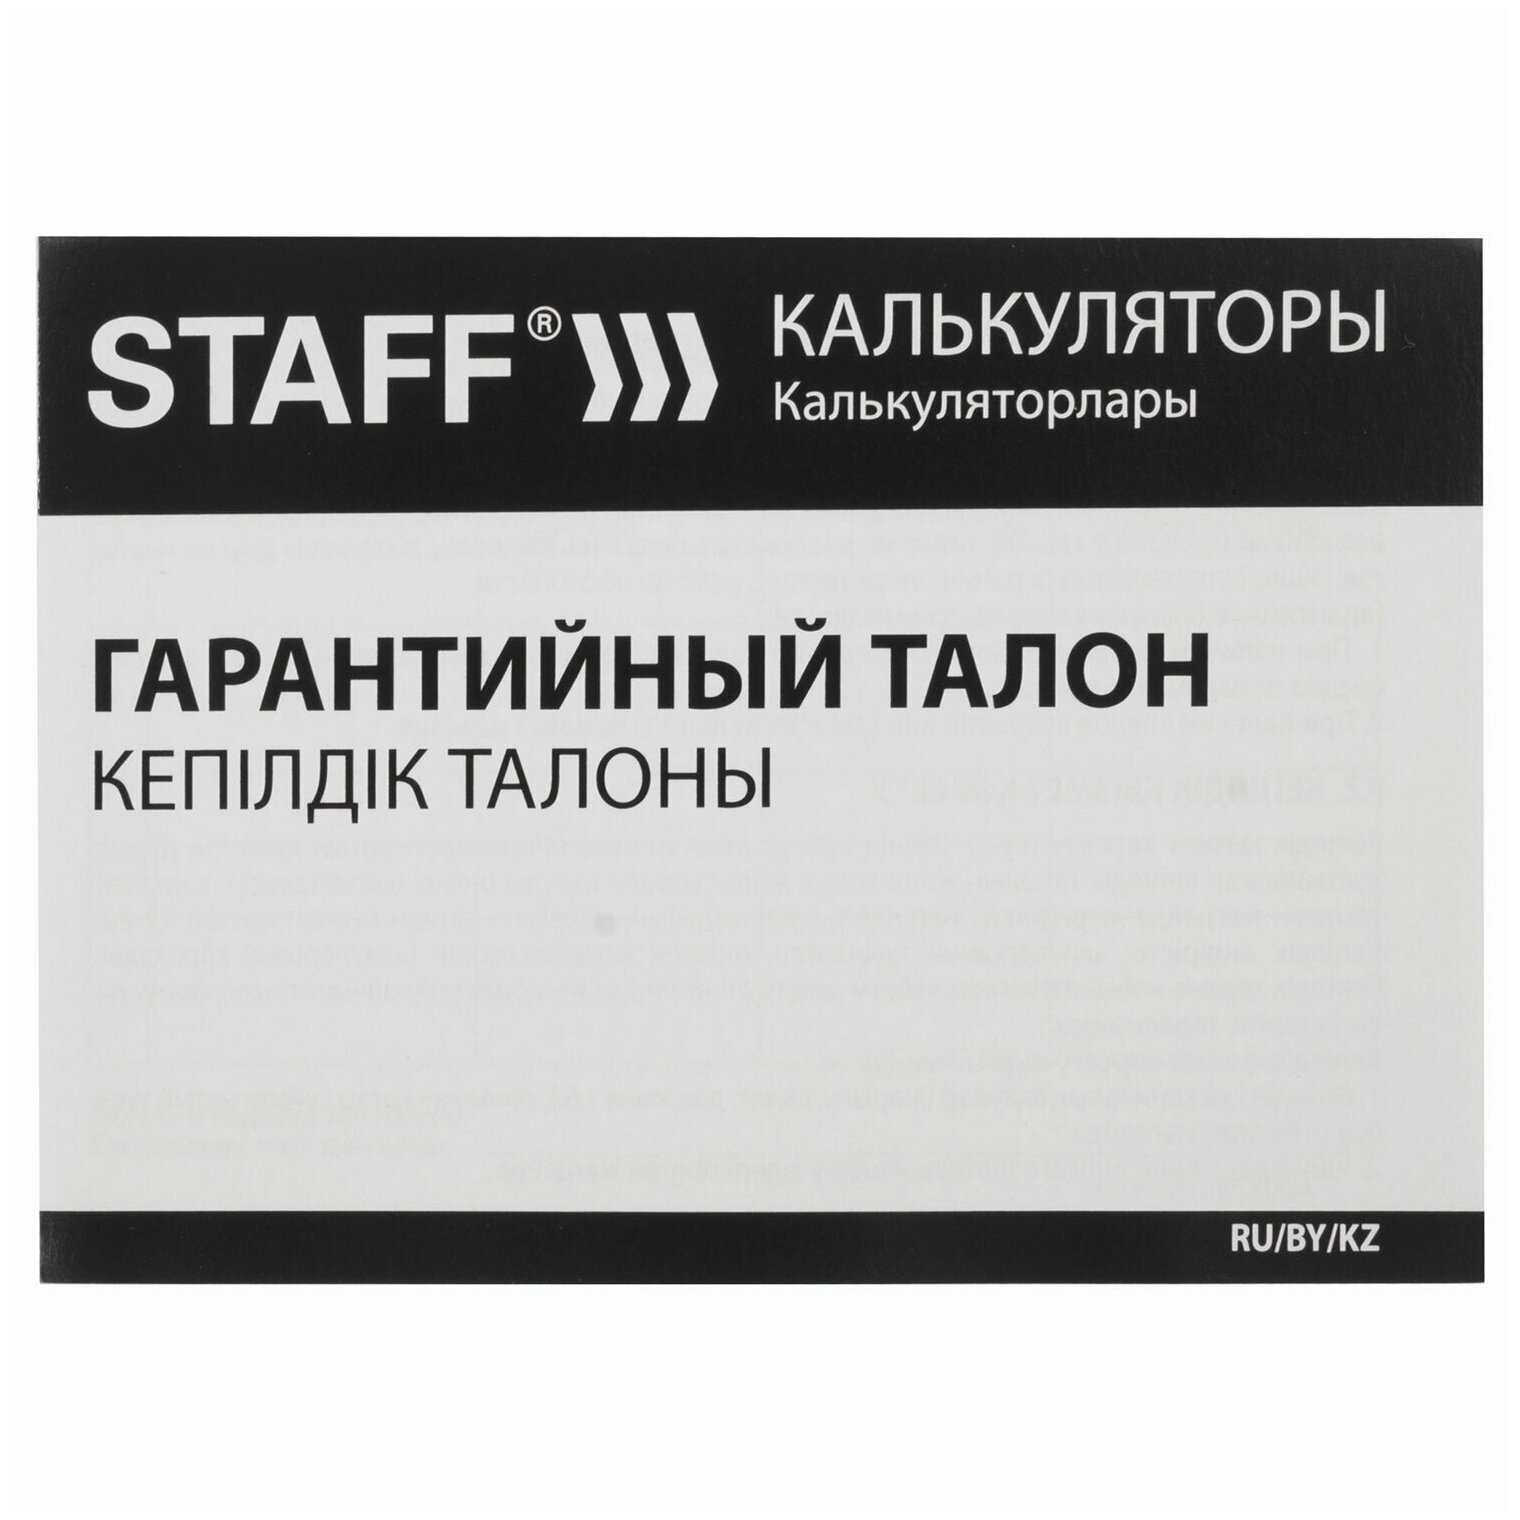 Калькулятор карманный STAFF STF-1008